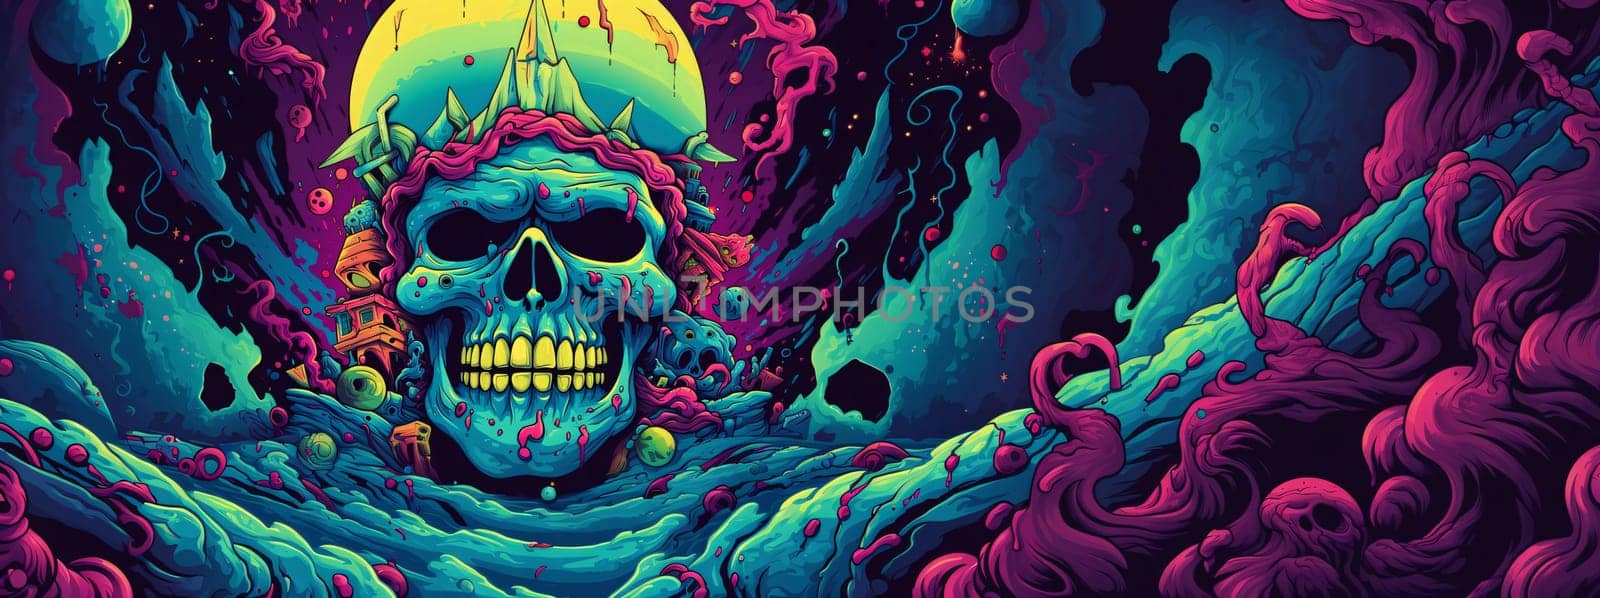 Banner: Skull in the sea. Vector illustration of a cartoon skull.